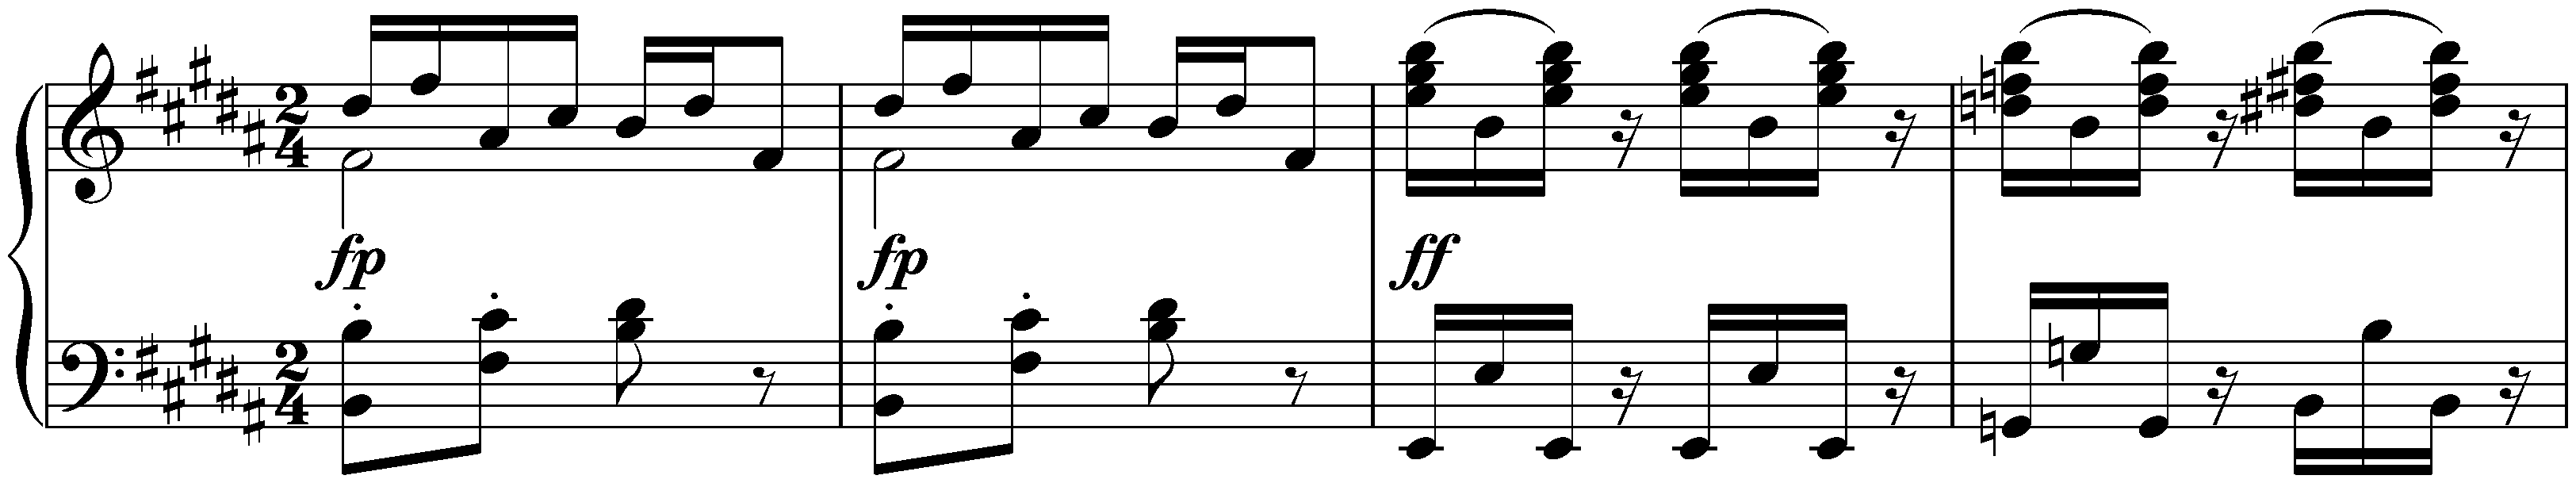 Twelve Waltzes, seventeen Ländler and nine Ecossaises, D 145; 36. Nine Ecossaises, no. 7 in B major